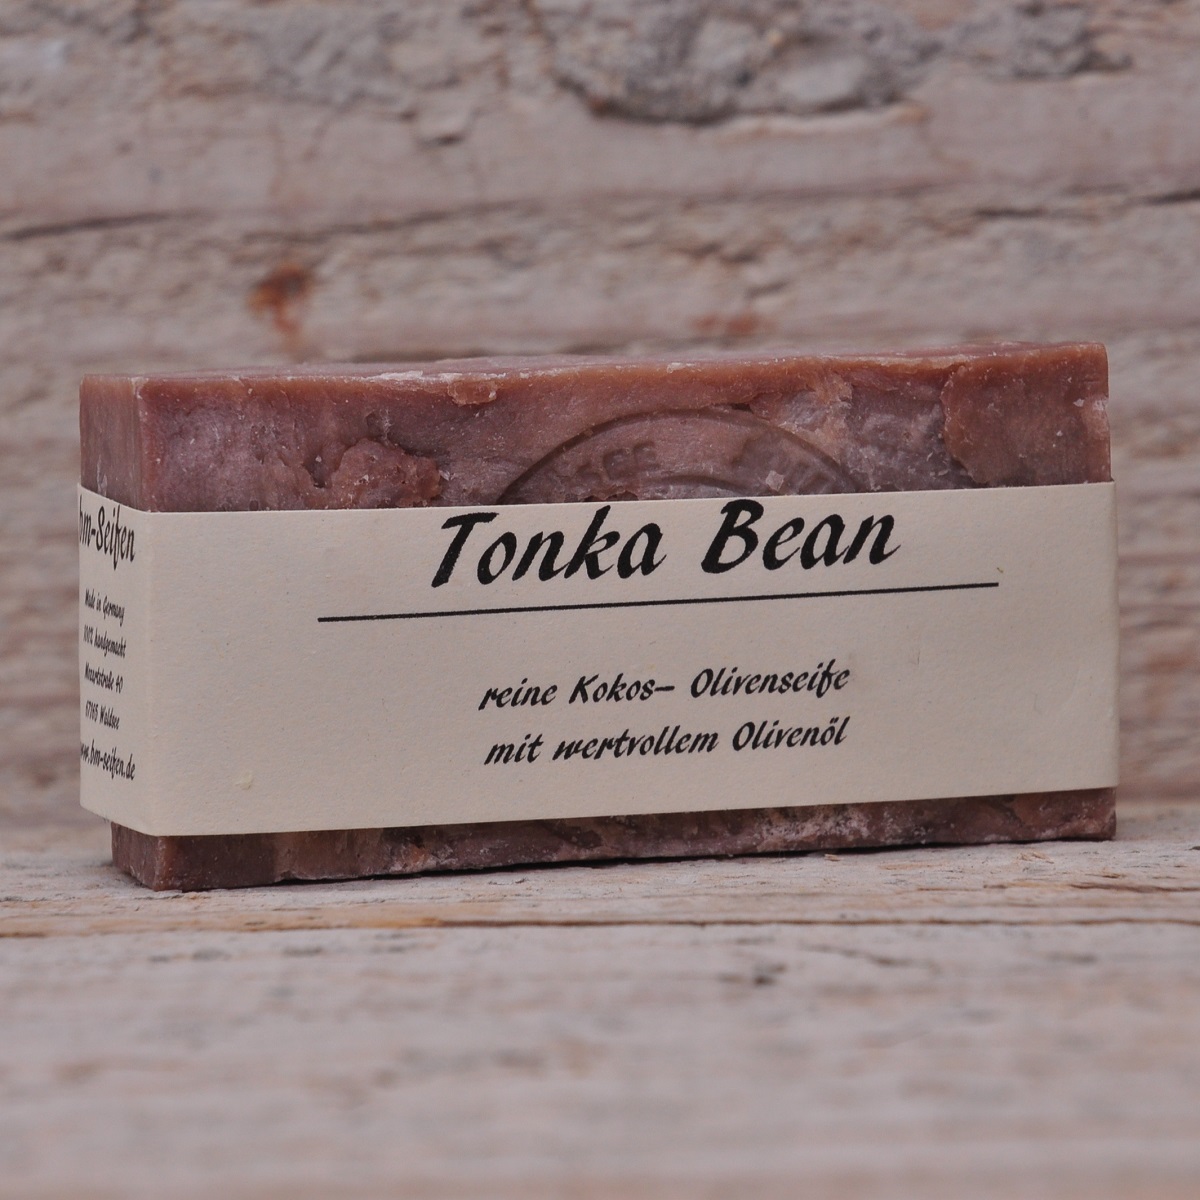 kraäftige Schokolade mit einem Schuß Vanille, Tonka Bean Seife